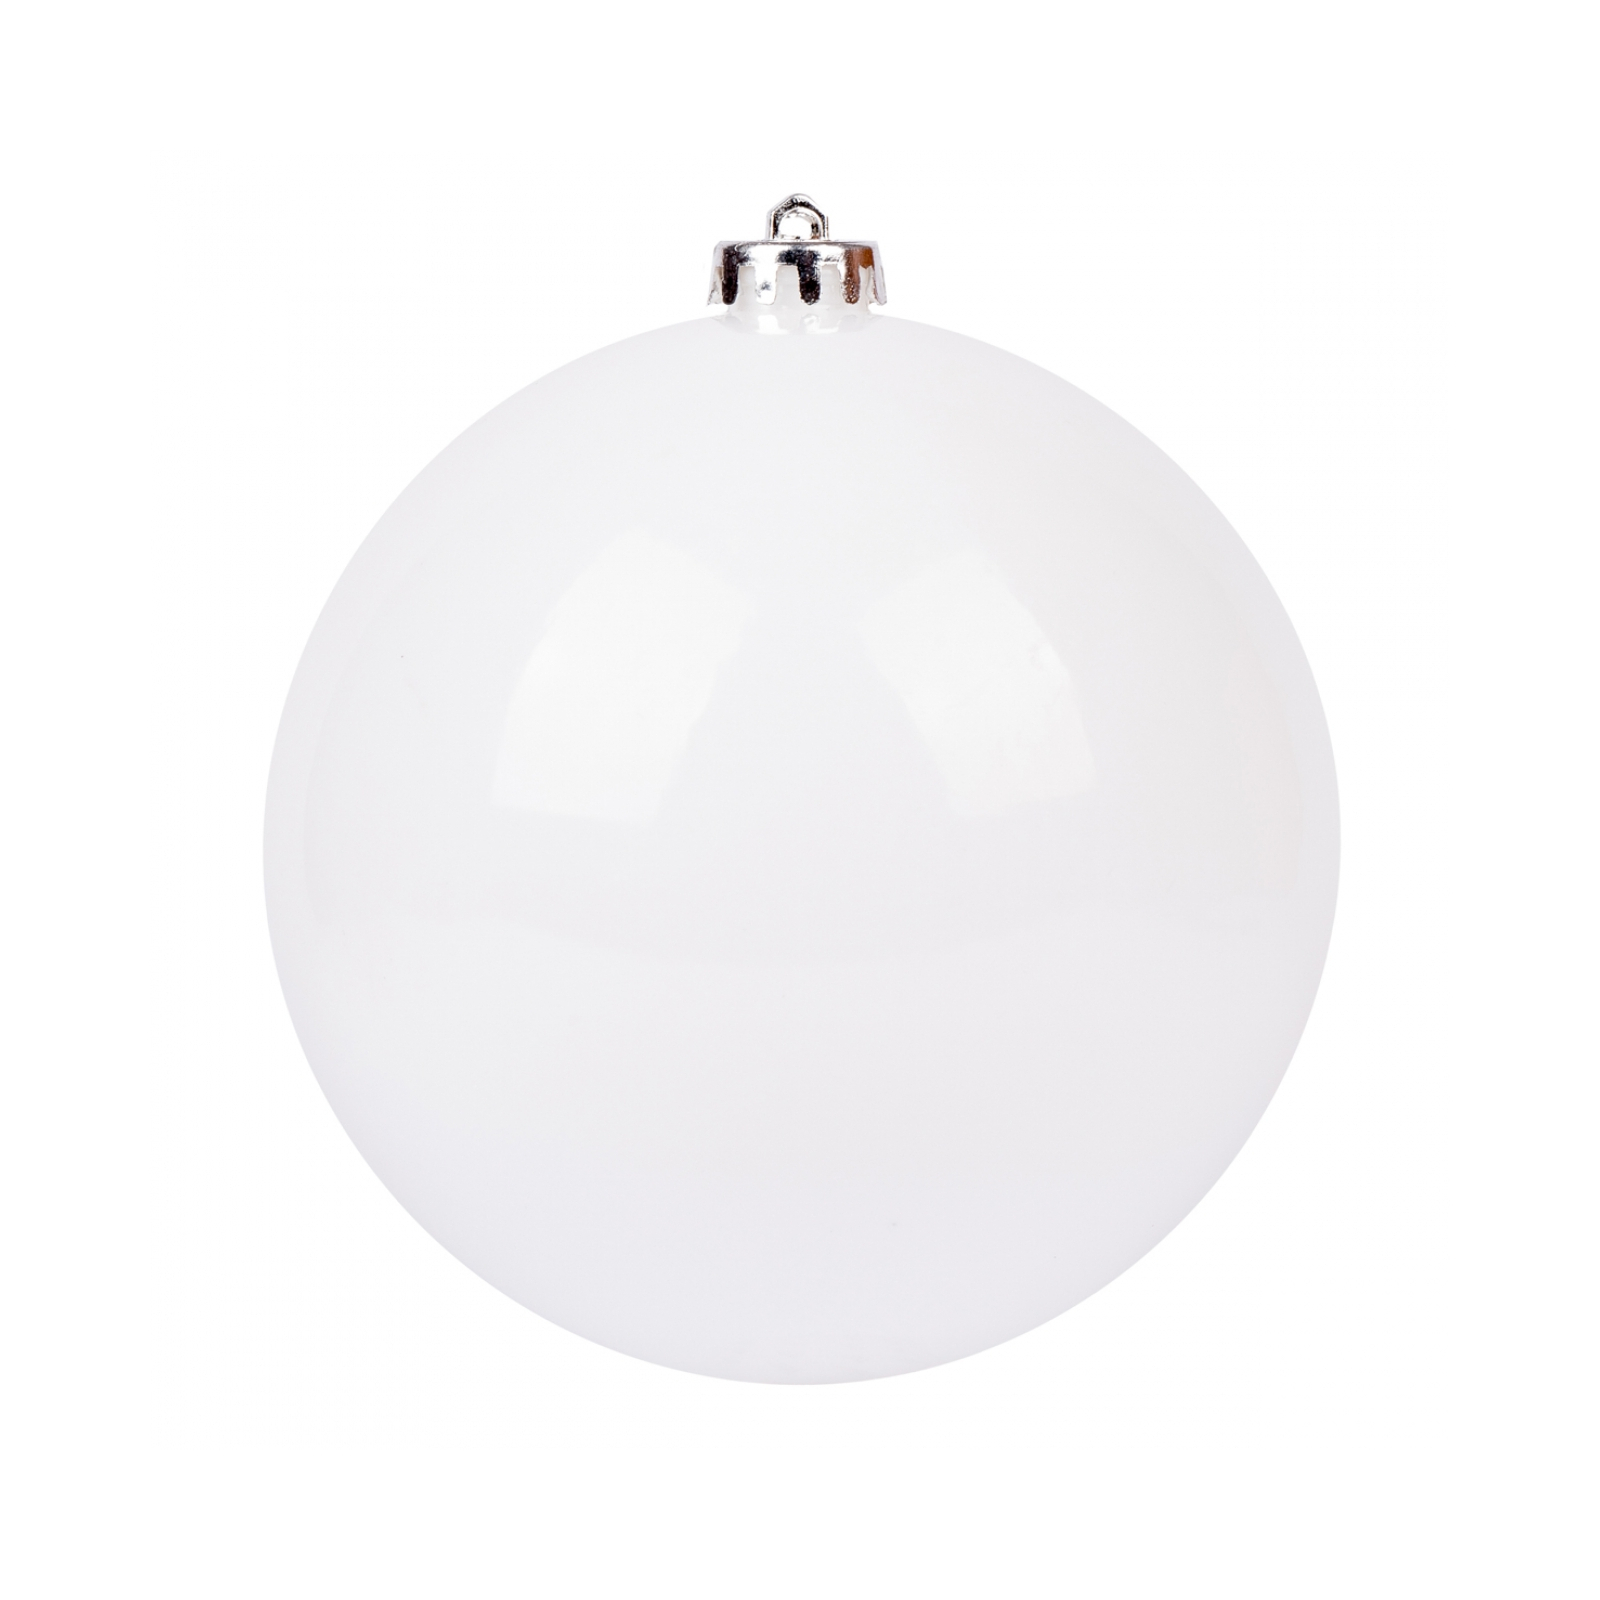 Елочная игрушка Novogod`ko шар пластик, 20 cм, белый, глянец (974074)